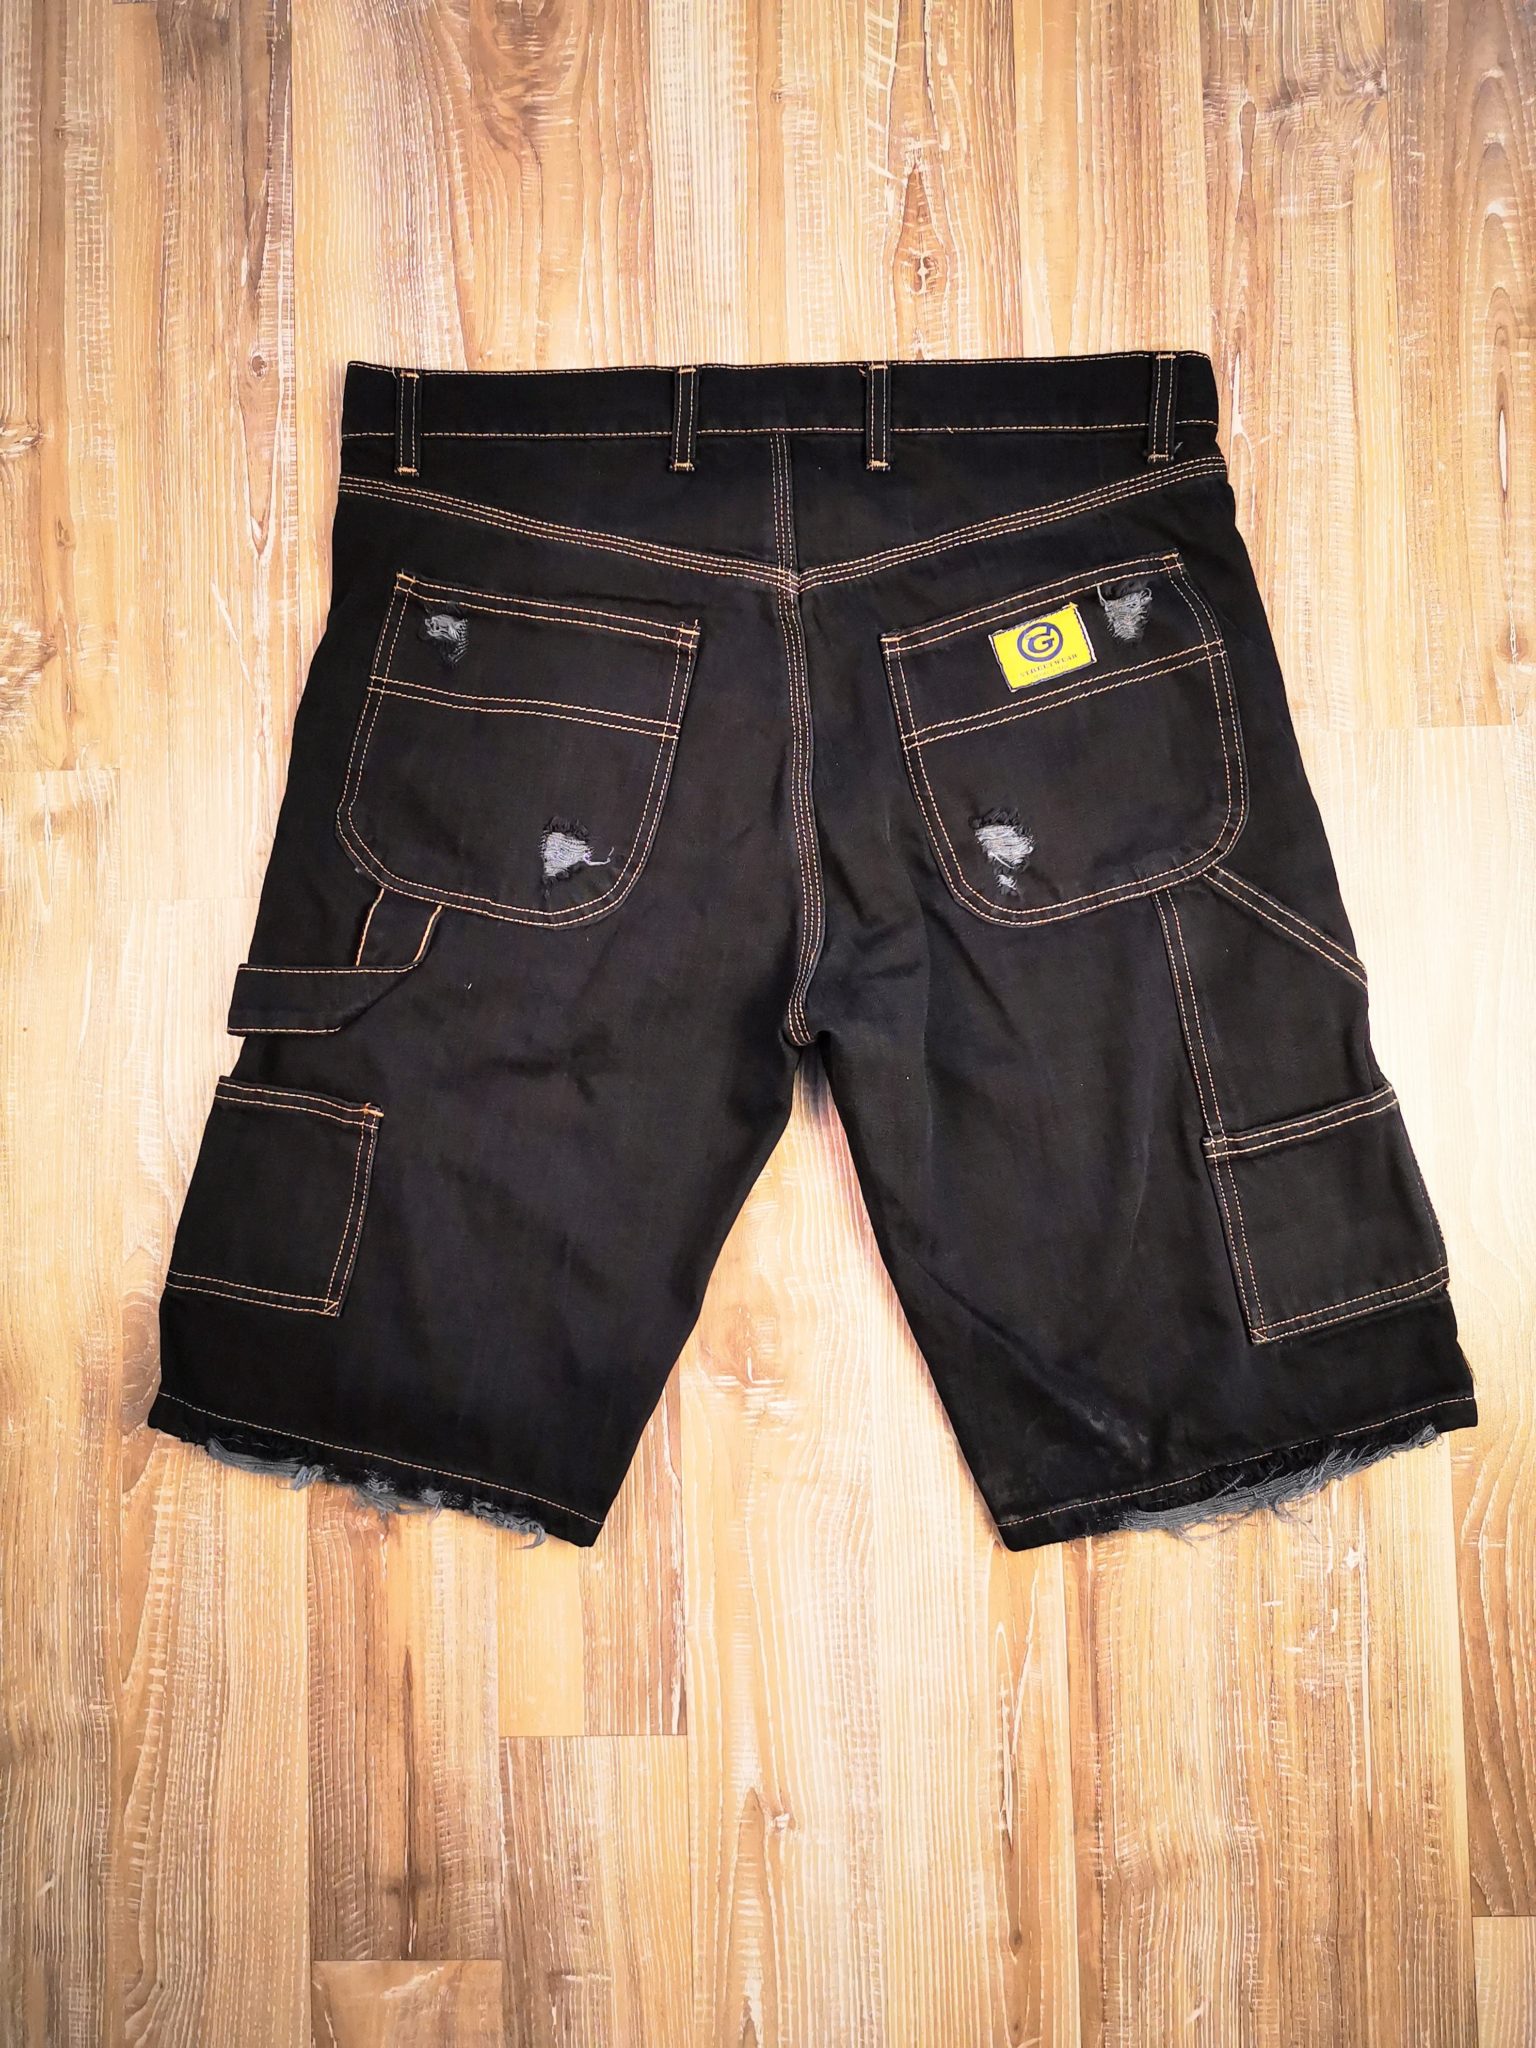 4.3 Worker Jeans Short Mr.Gulliver washed black color destroy style — Mr.  Gulliver Store